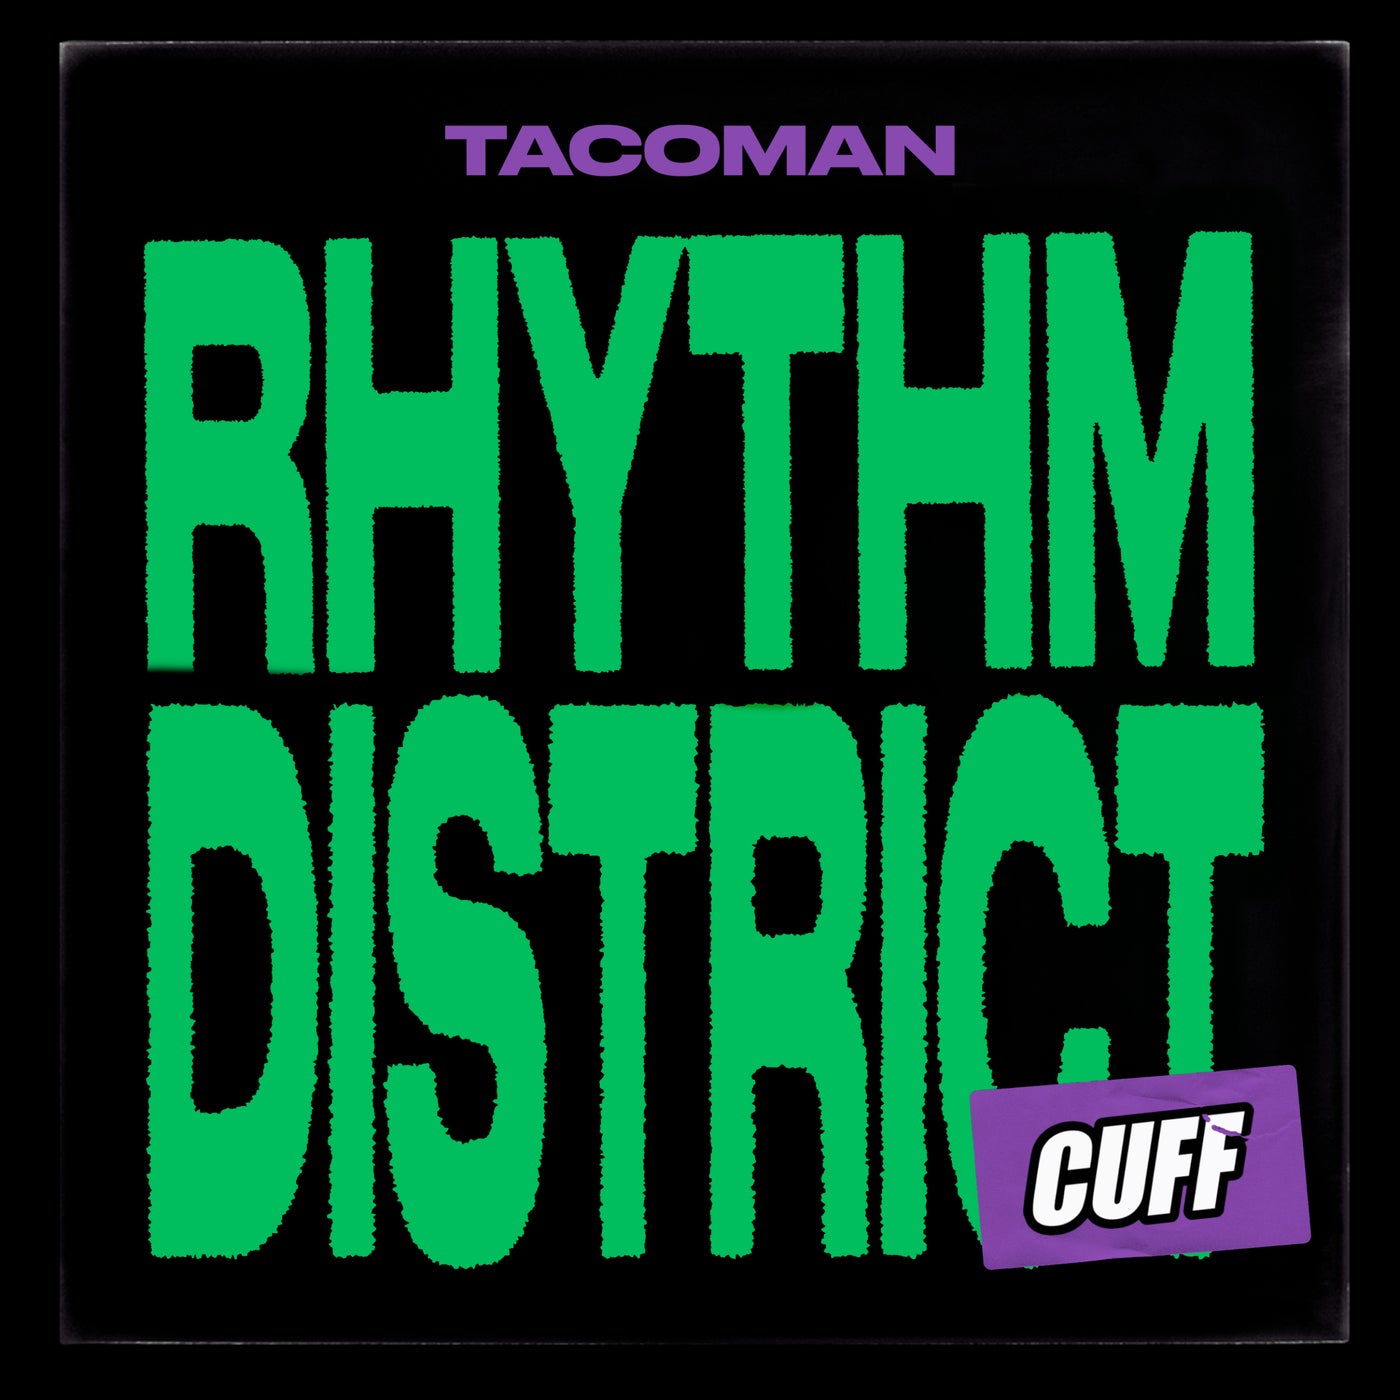 Rhythm District